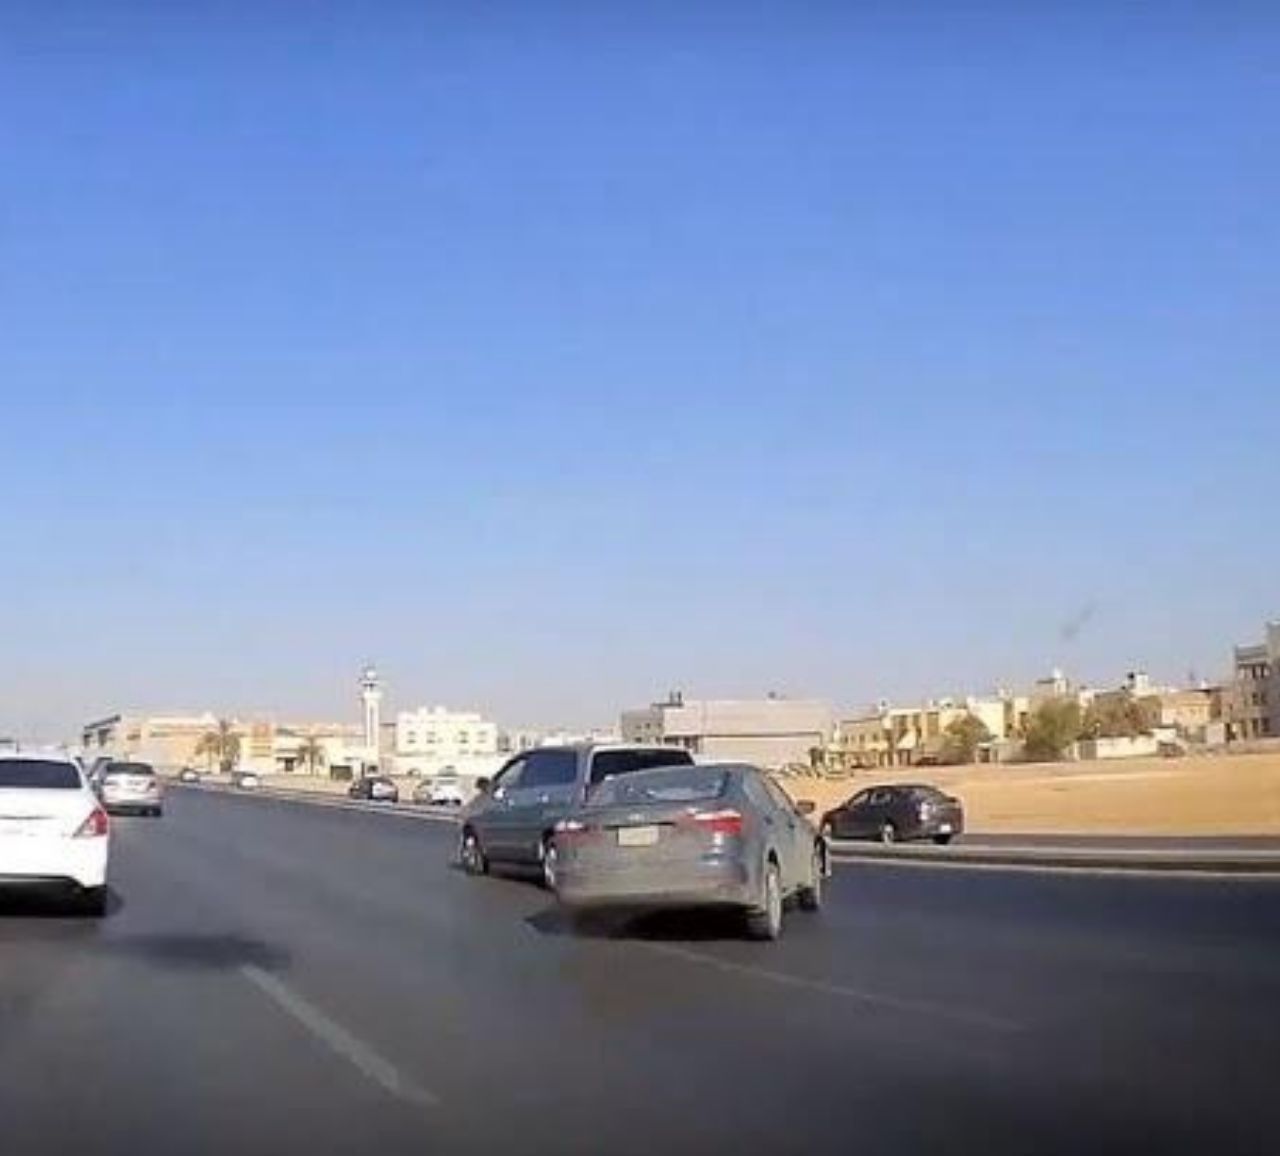 بالفيديو .. لحظة انحراف سيارة بشكل مفاجىء وخروجها عن الطريق السريع بالرياض